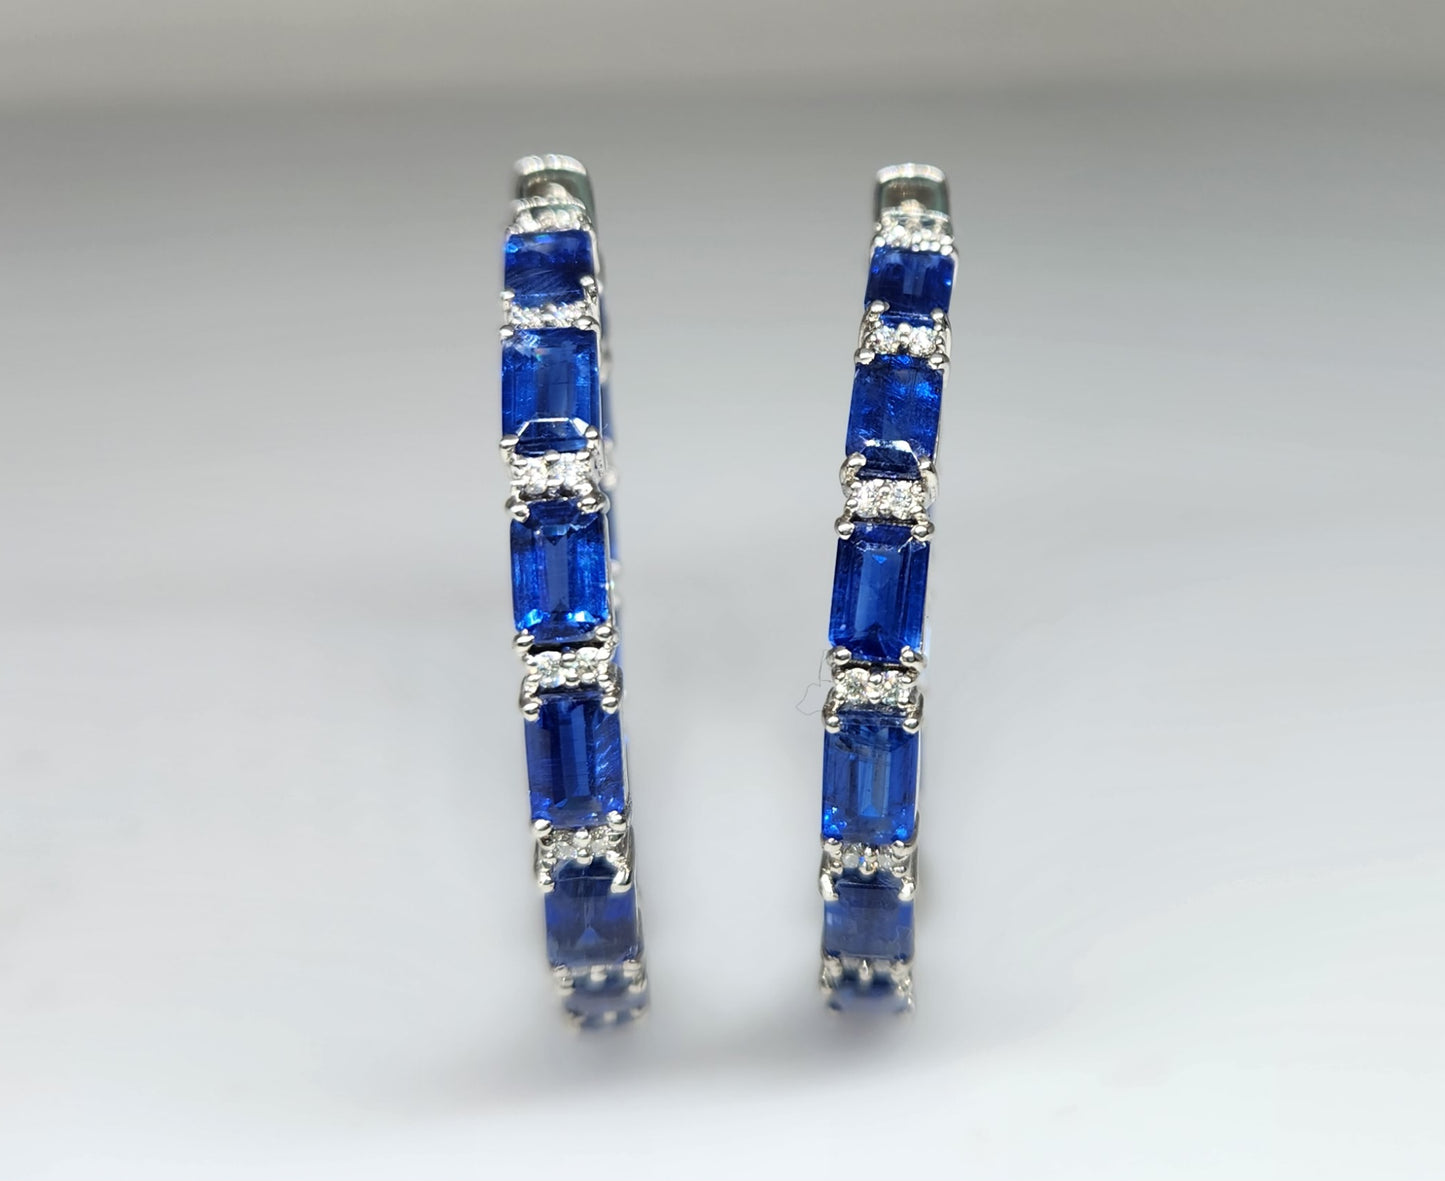 Blue Kyanite Gemstone Hoop Earrings Sterling Silver #428